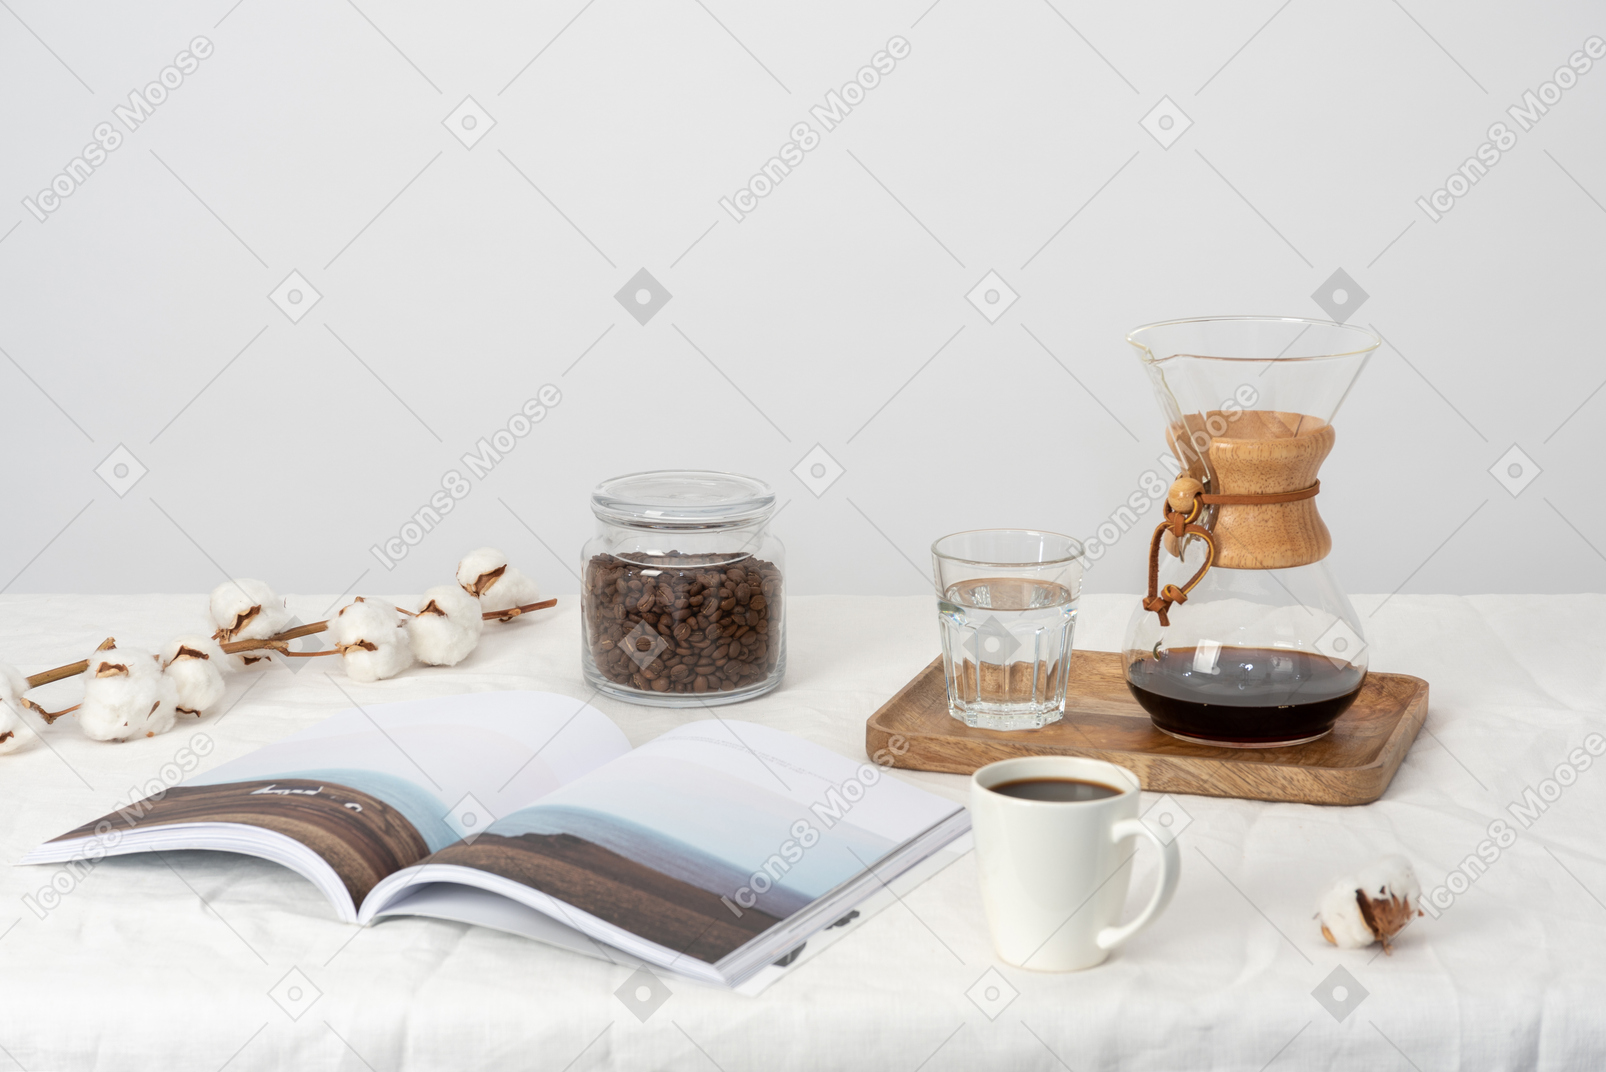 쟁반에 케멕스와 물 잔, 큰 물 잔, 커피 원두가 든 항아리, 마가 지베 및 면화 가지